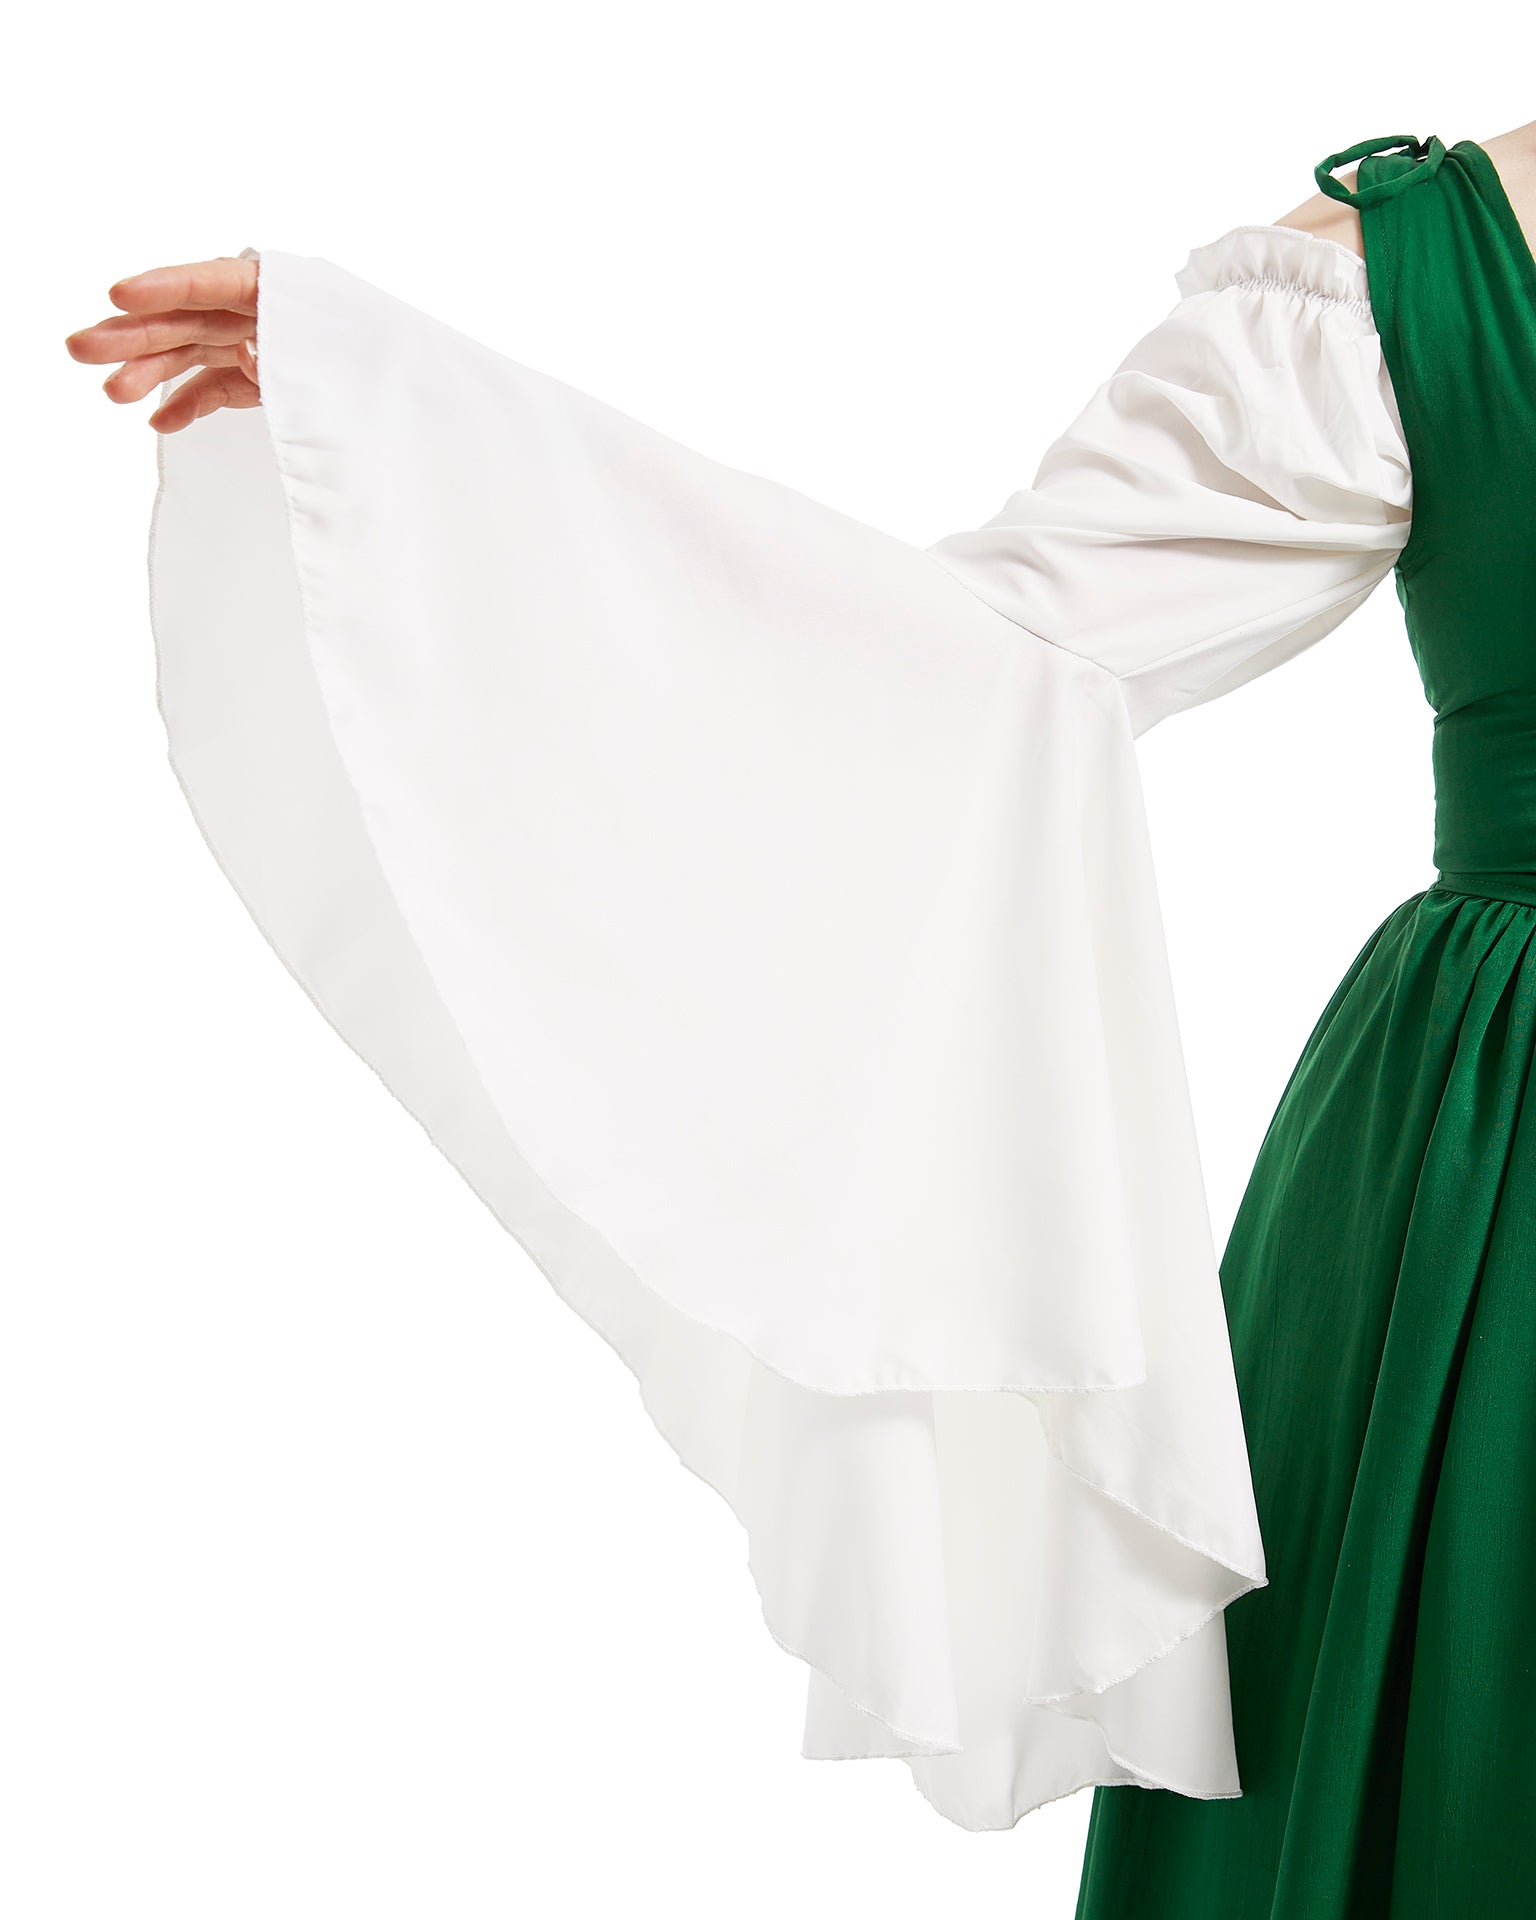 The Irish Dress & Mythic Chemise